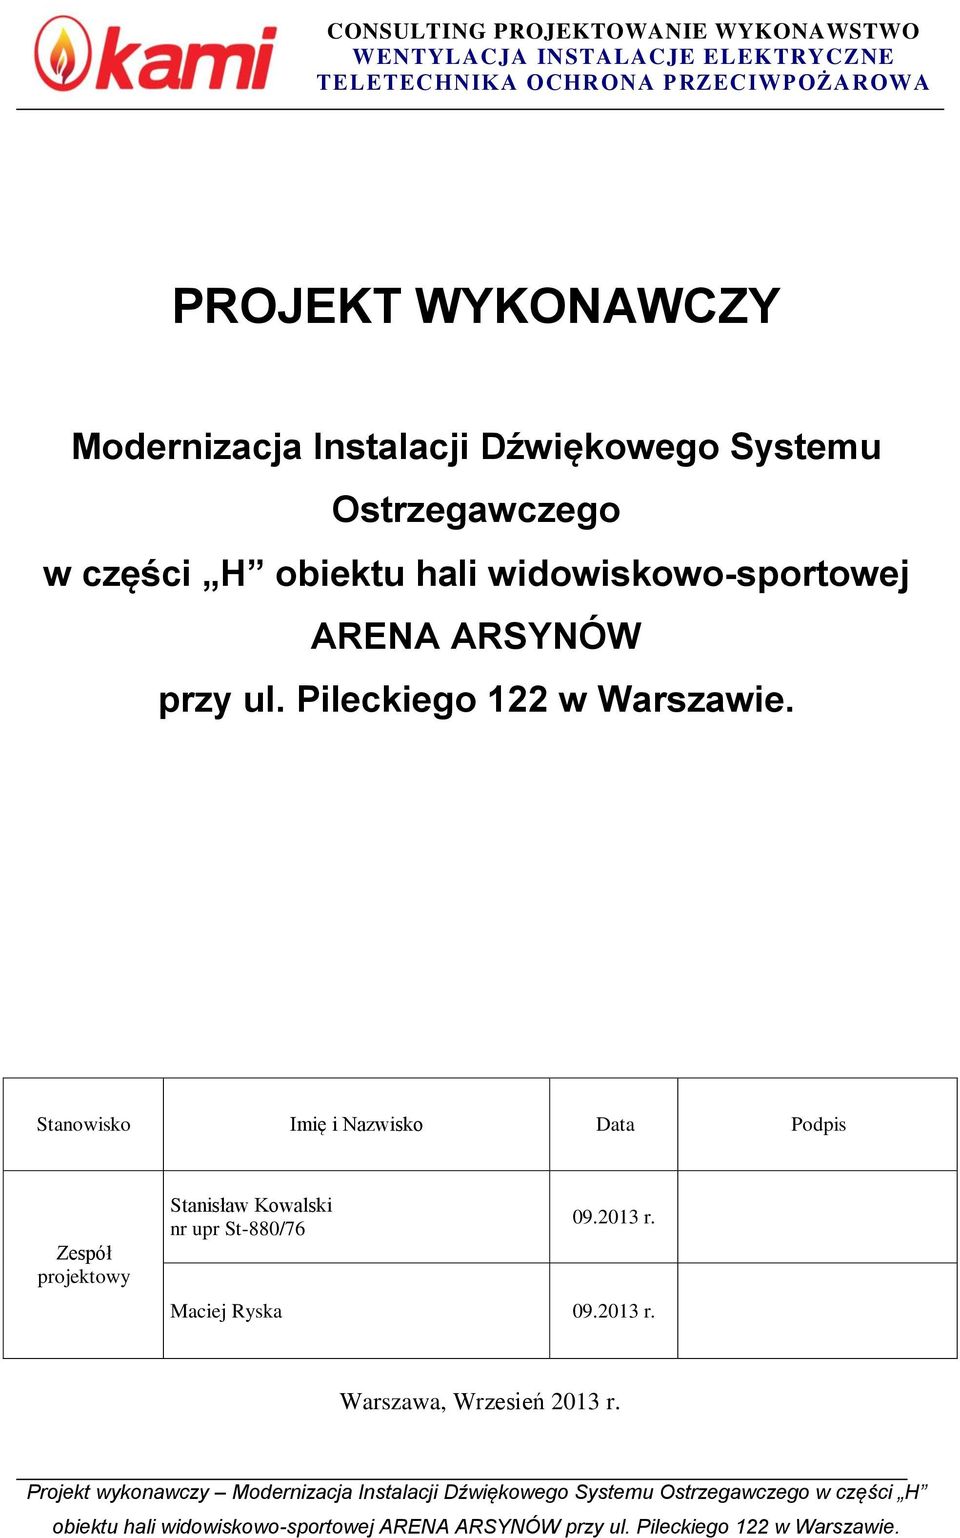 Pileckiego 22 w Warszawie.